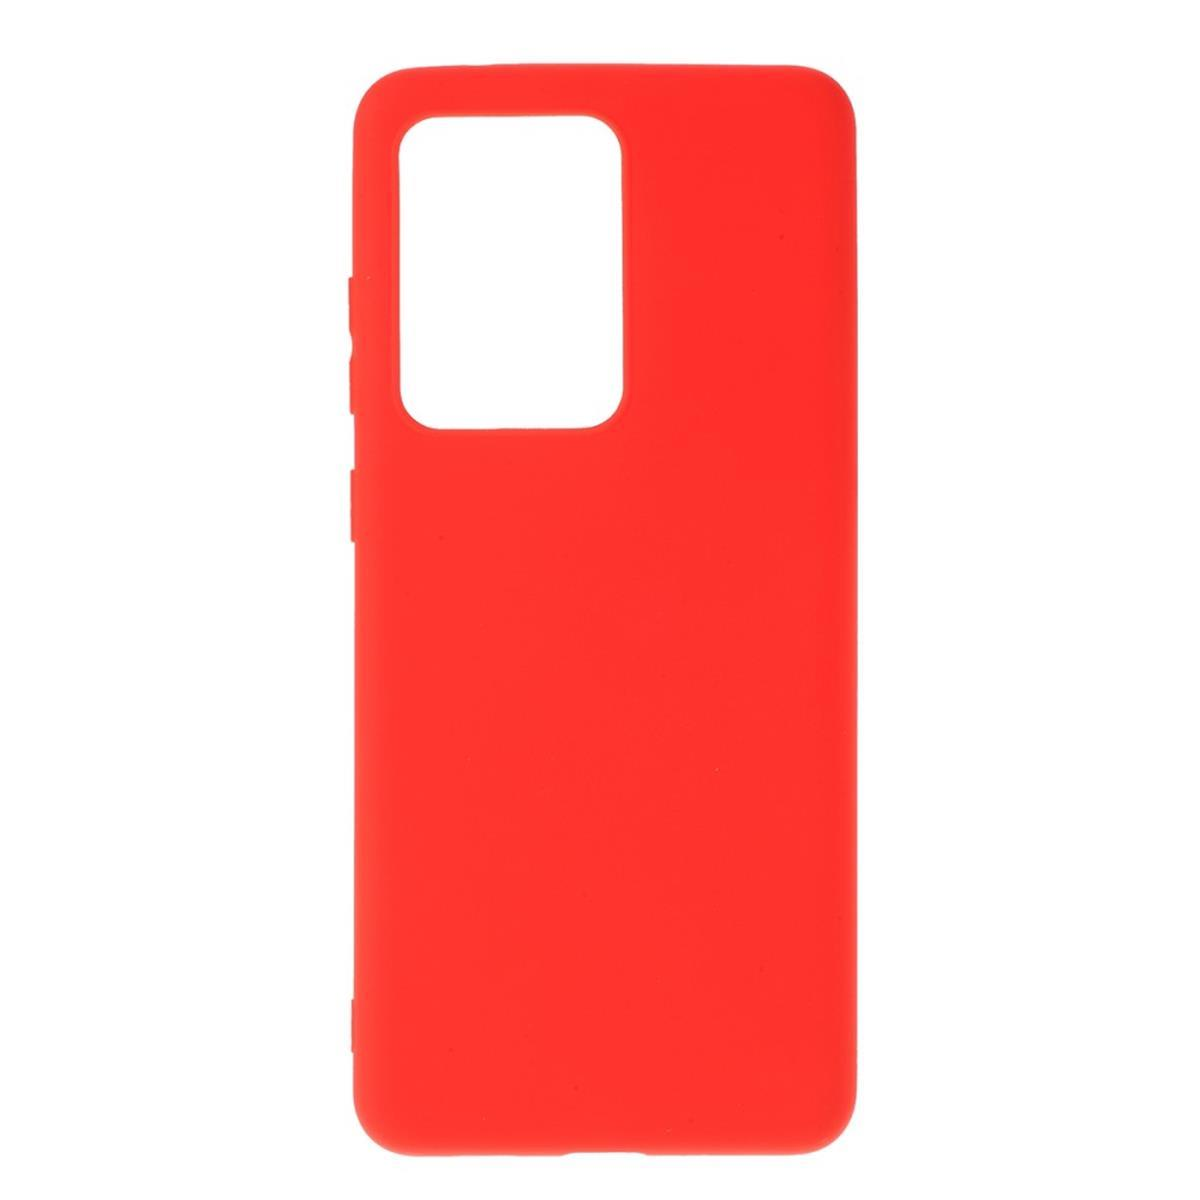 10 Redmi aus / Silikon, Backcover, Rot COVERKINGZ Handycase Prime, Xiaomi, Redmi 10